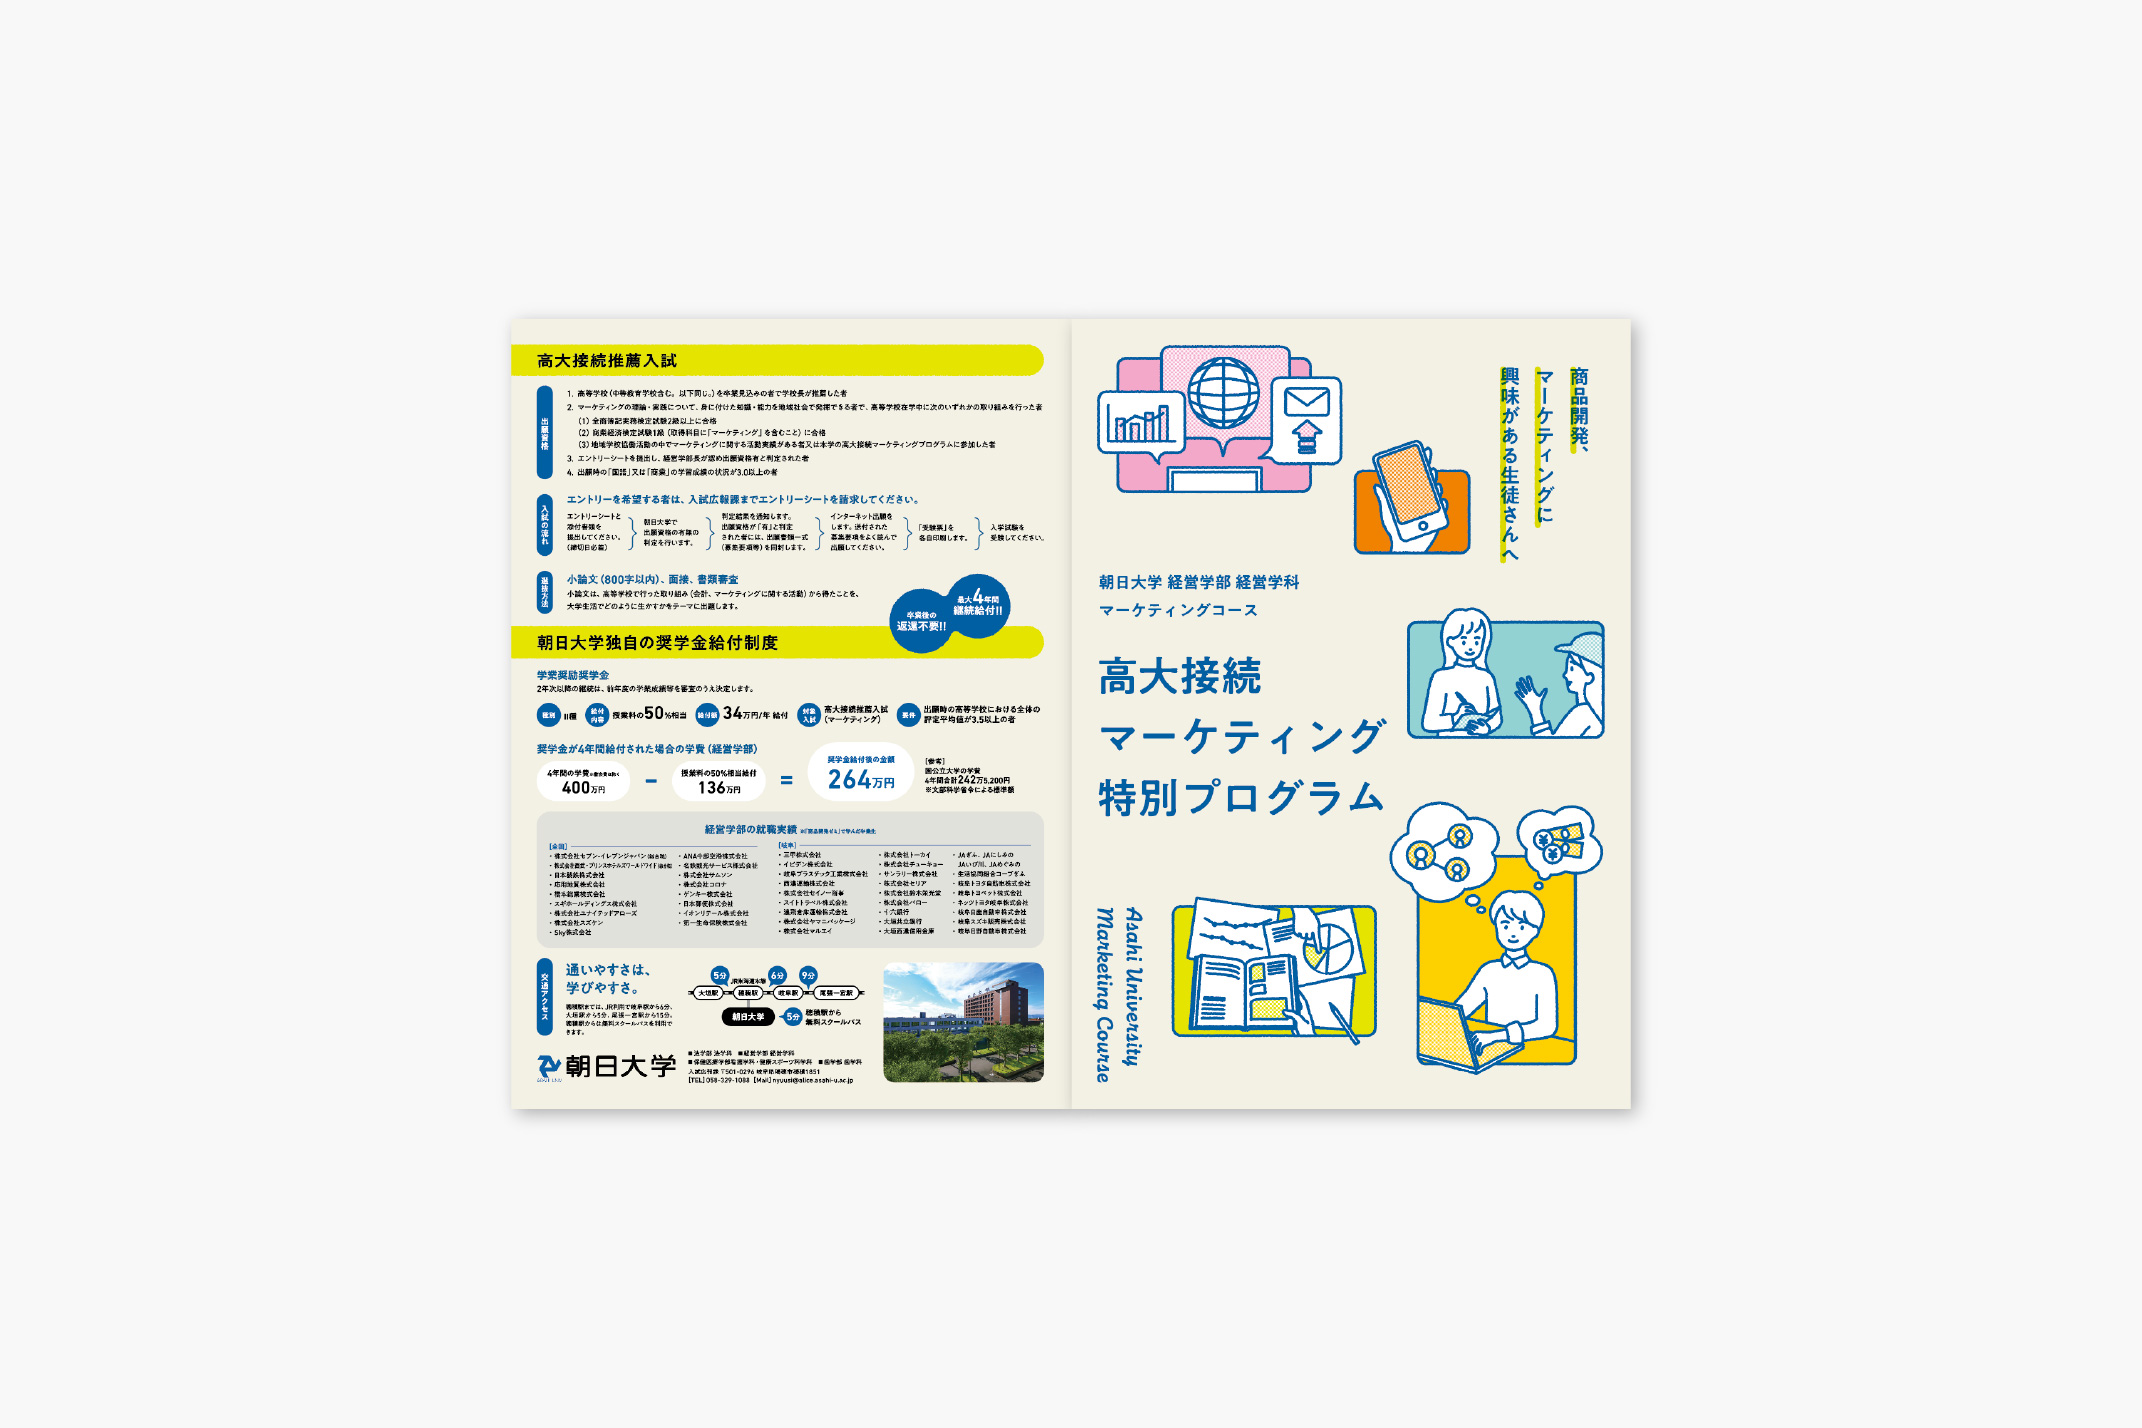 朝日大学 経済学部 経営学科 マーケティングコース / パンフレット